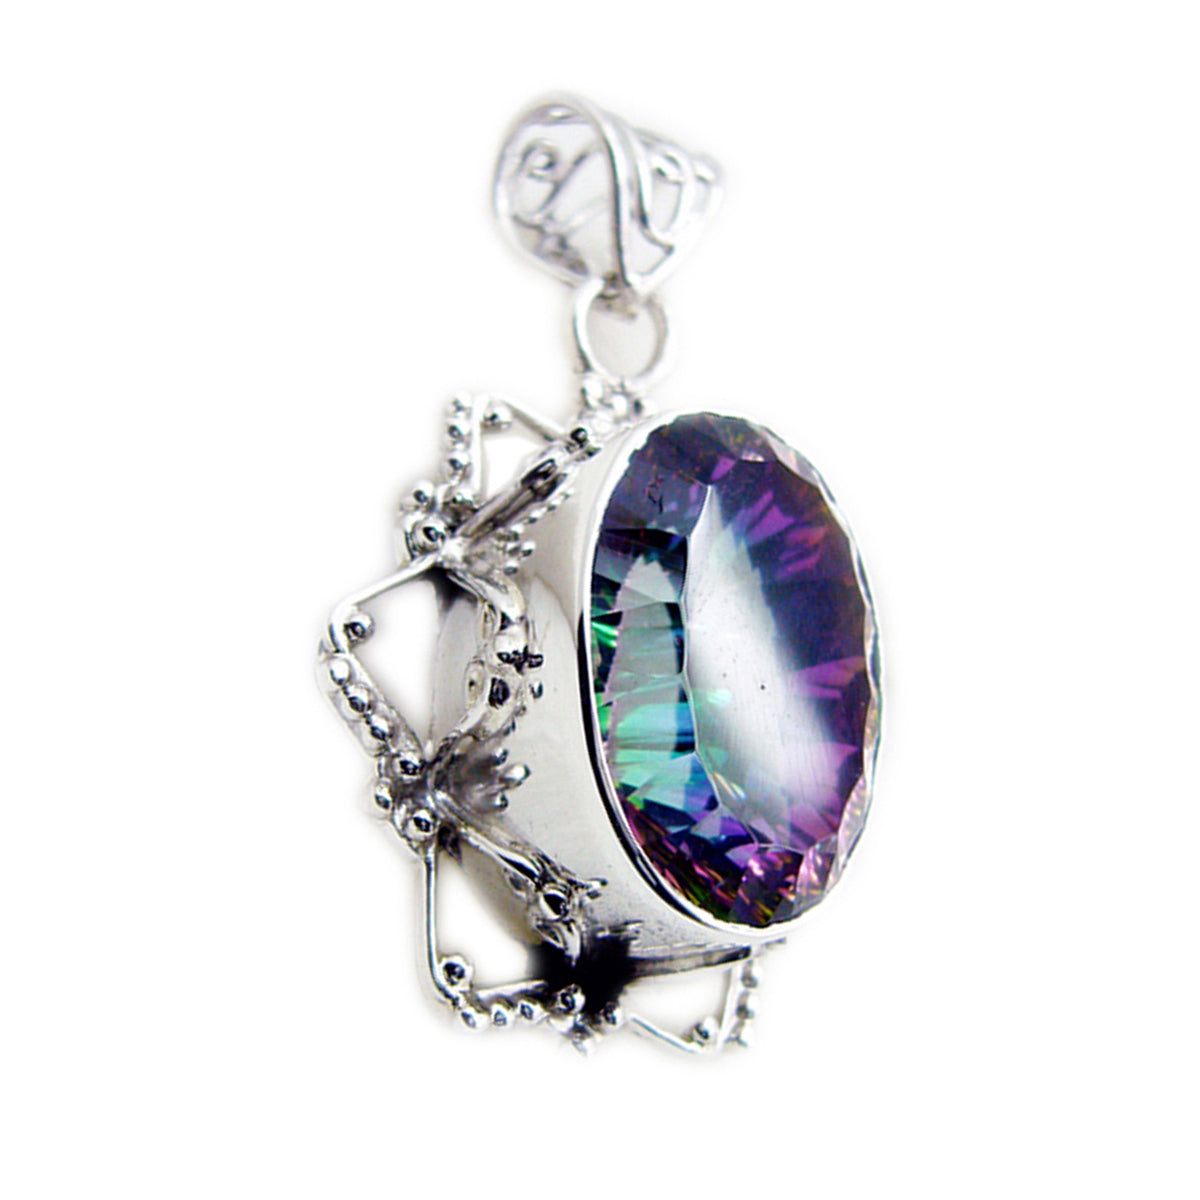 Riyo jolie pierre précieuse ovale à facettes multicolore quartz mystique pendentif en argent sterling cadeau pour ami